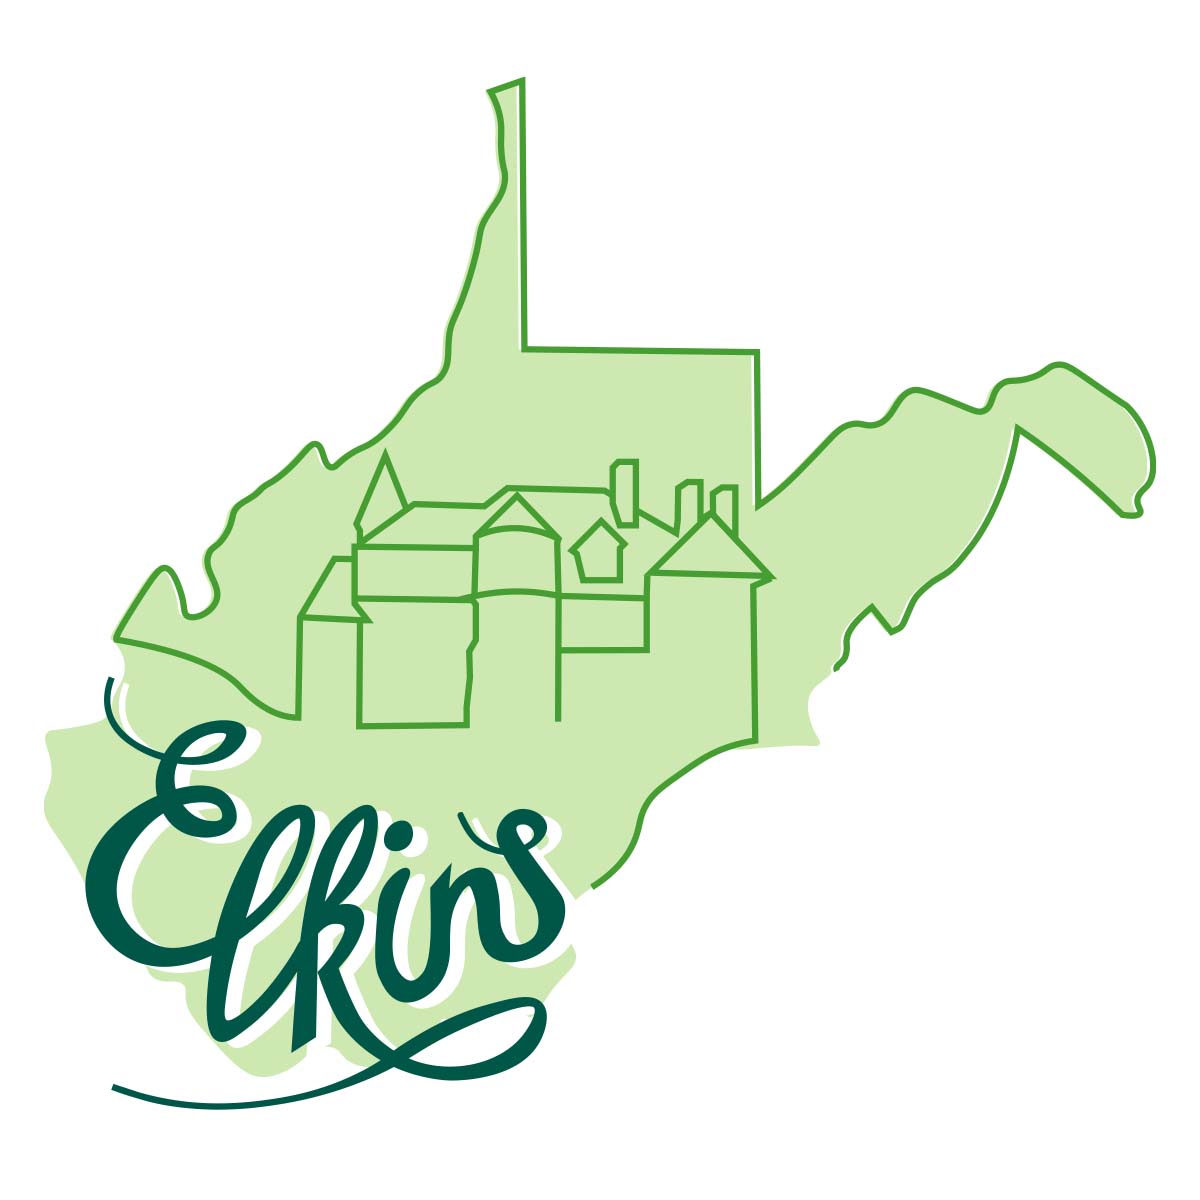 Davis & Elkins College logo variation